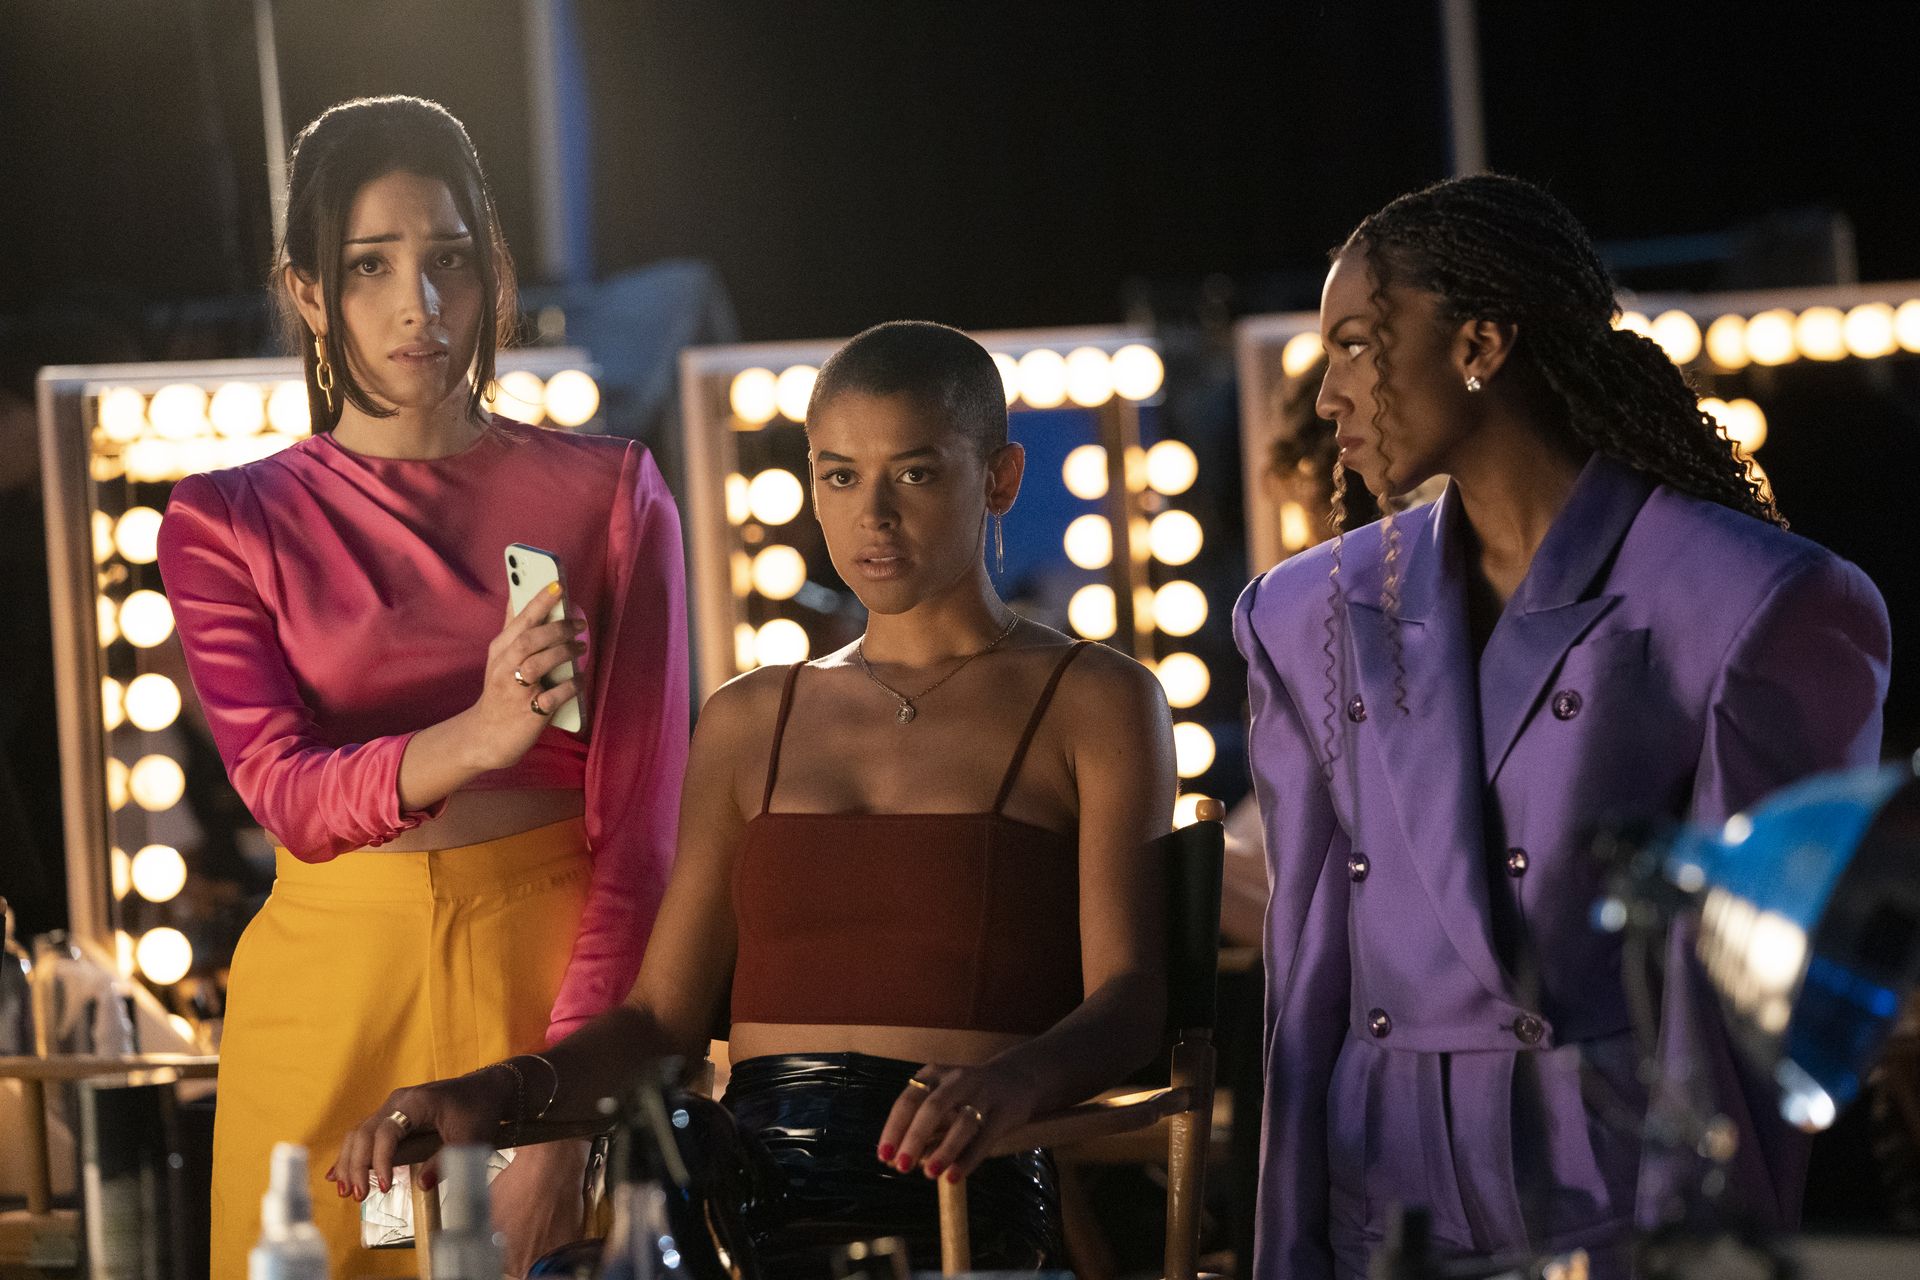 Gossip Girl Season 2 Ending Explained: The End, For Now